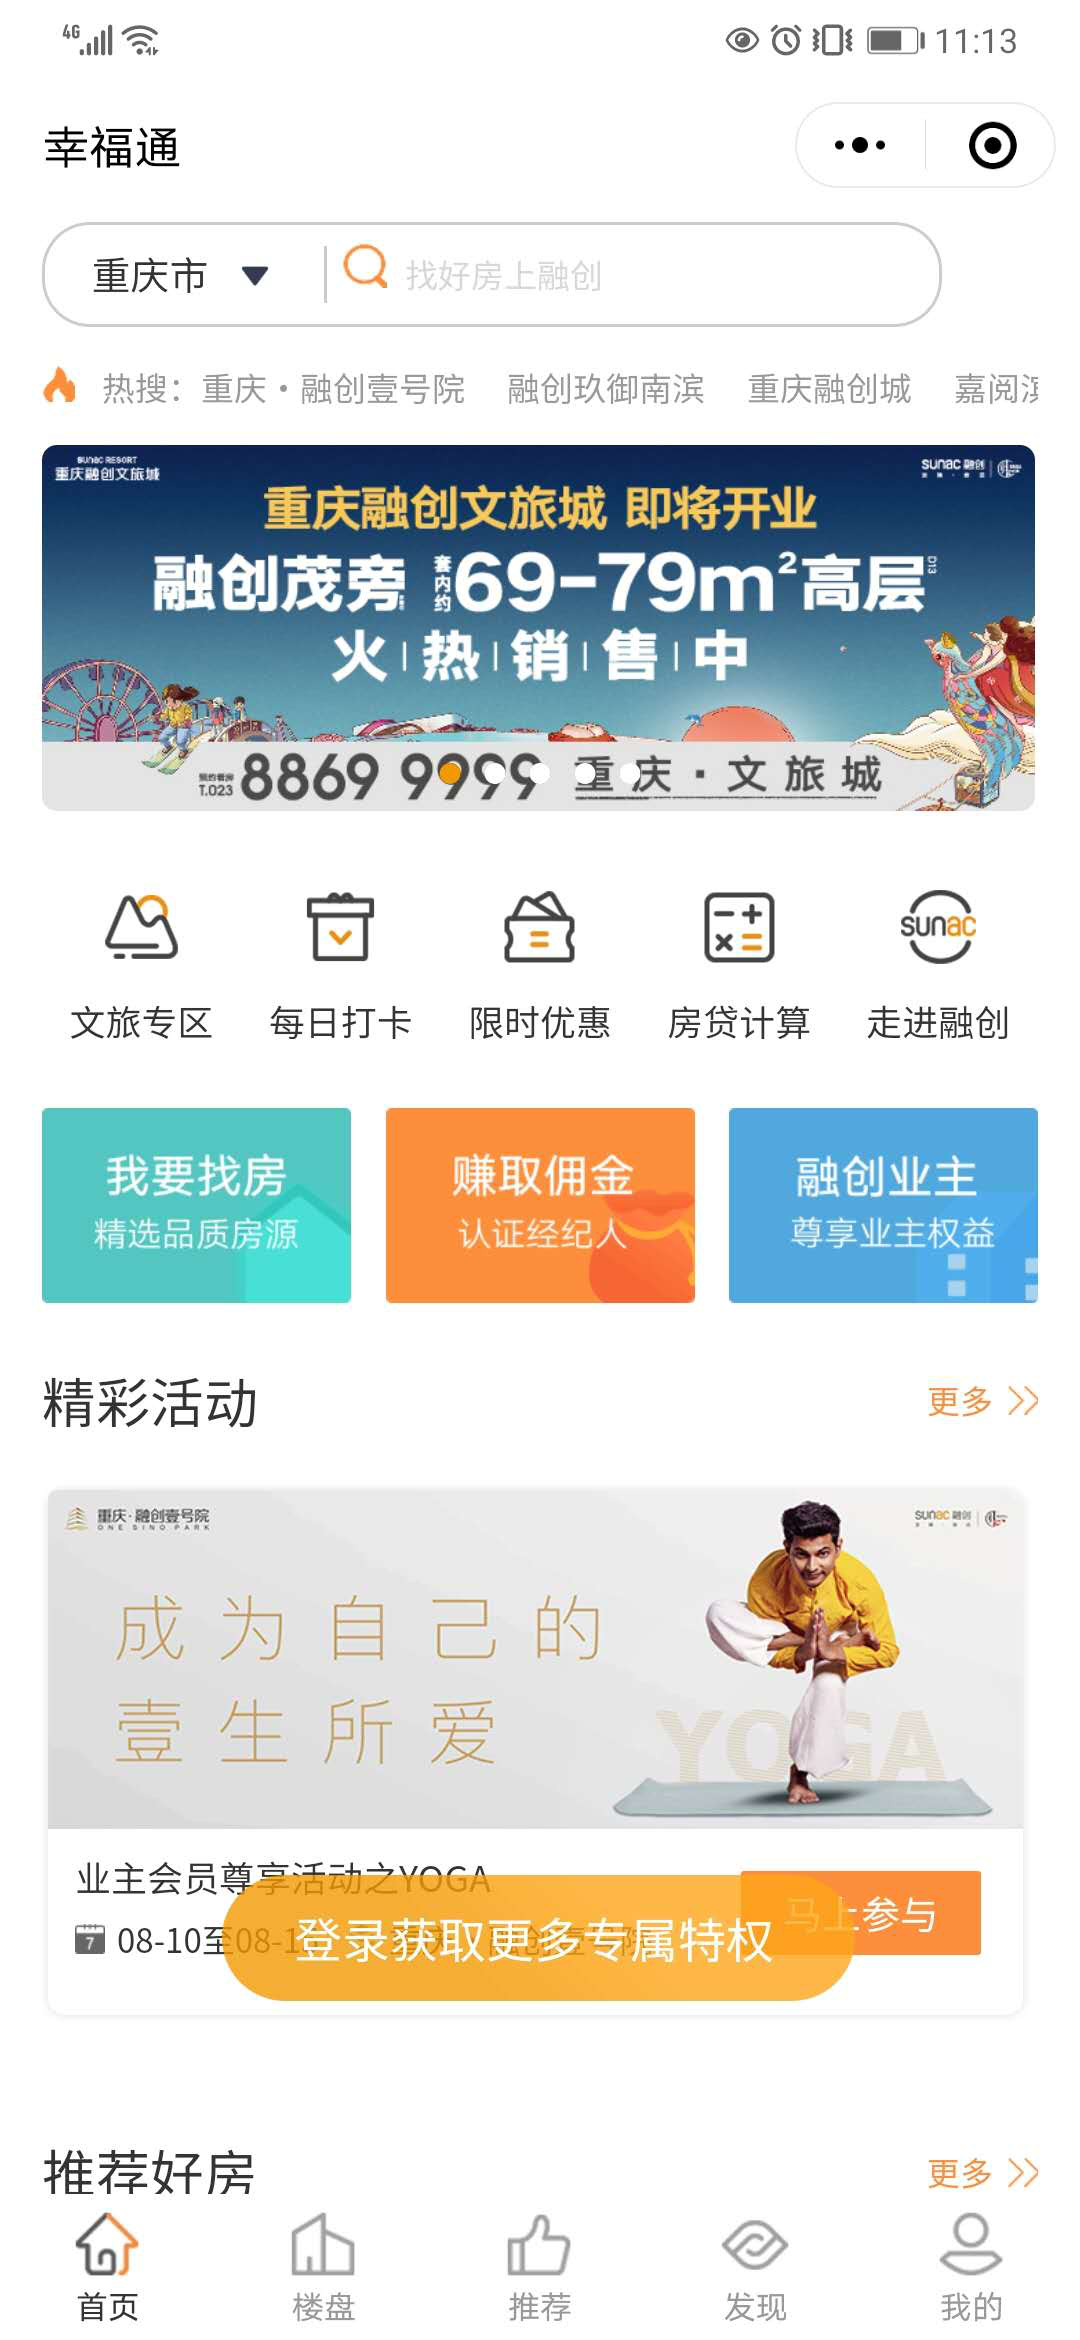 融创西南幸福通全新升级改版 8月18日正式推出-中国网地产